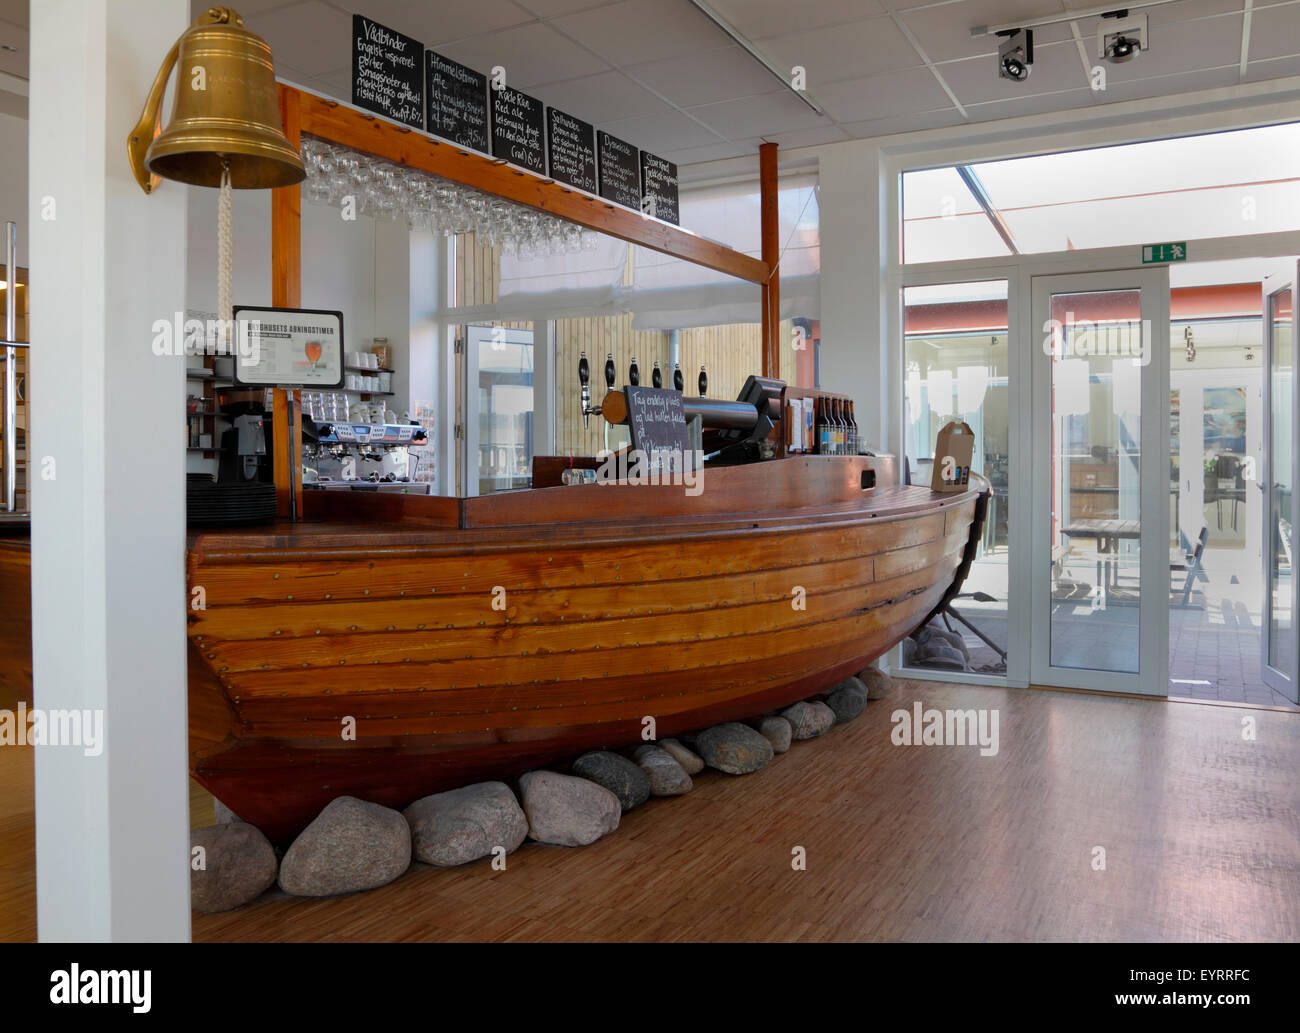 Die Bar wurde von einem wikinger-ähnlichen Boot in Halsnaes Bryghus, Halsnaes Brew-House, einer lokalen Mikrobrauerei am Hundested Harbour, Dänemark, gebildet Stockfoto